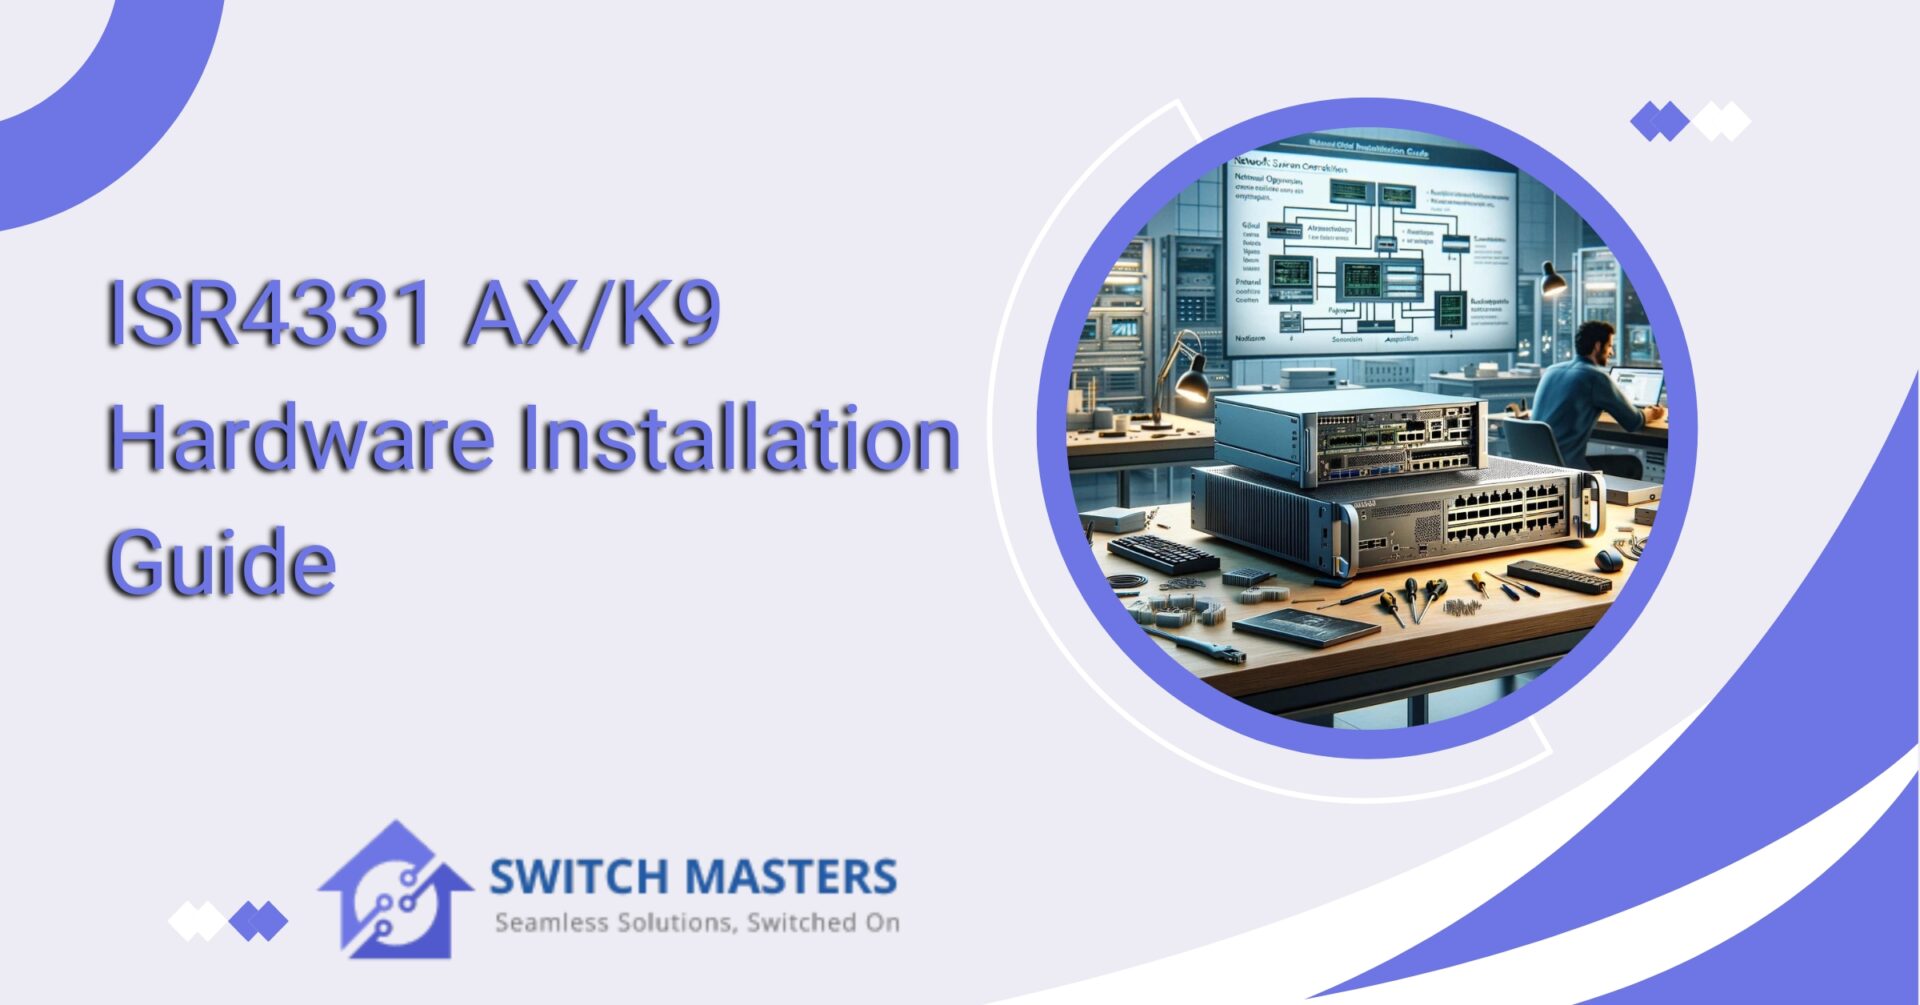 ISR4331 AX/K9 Hardware Installation Guide